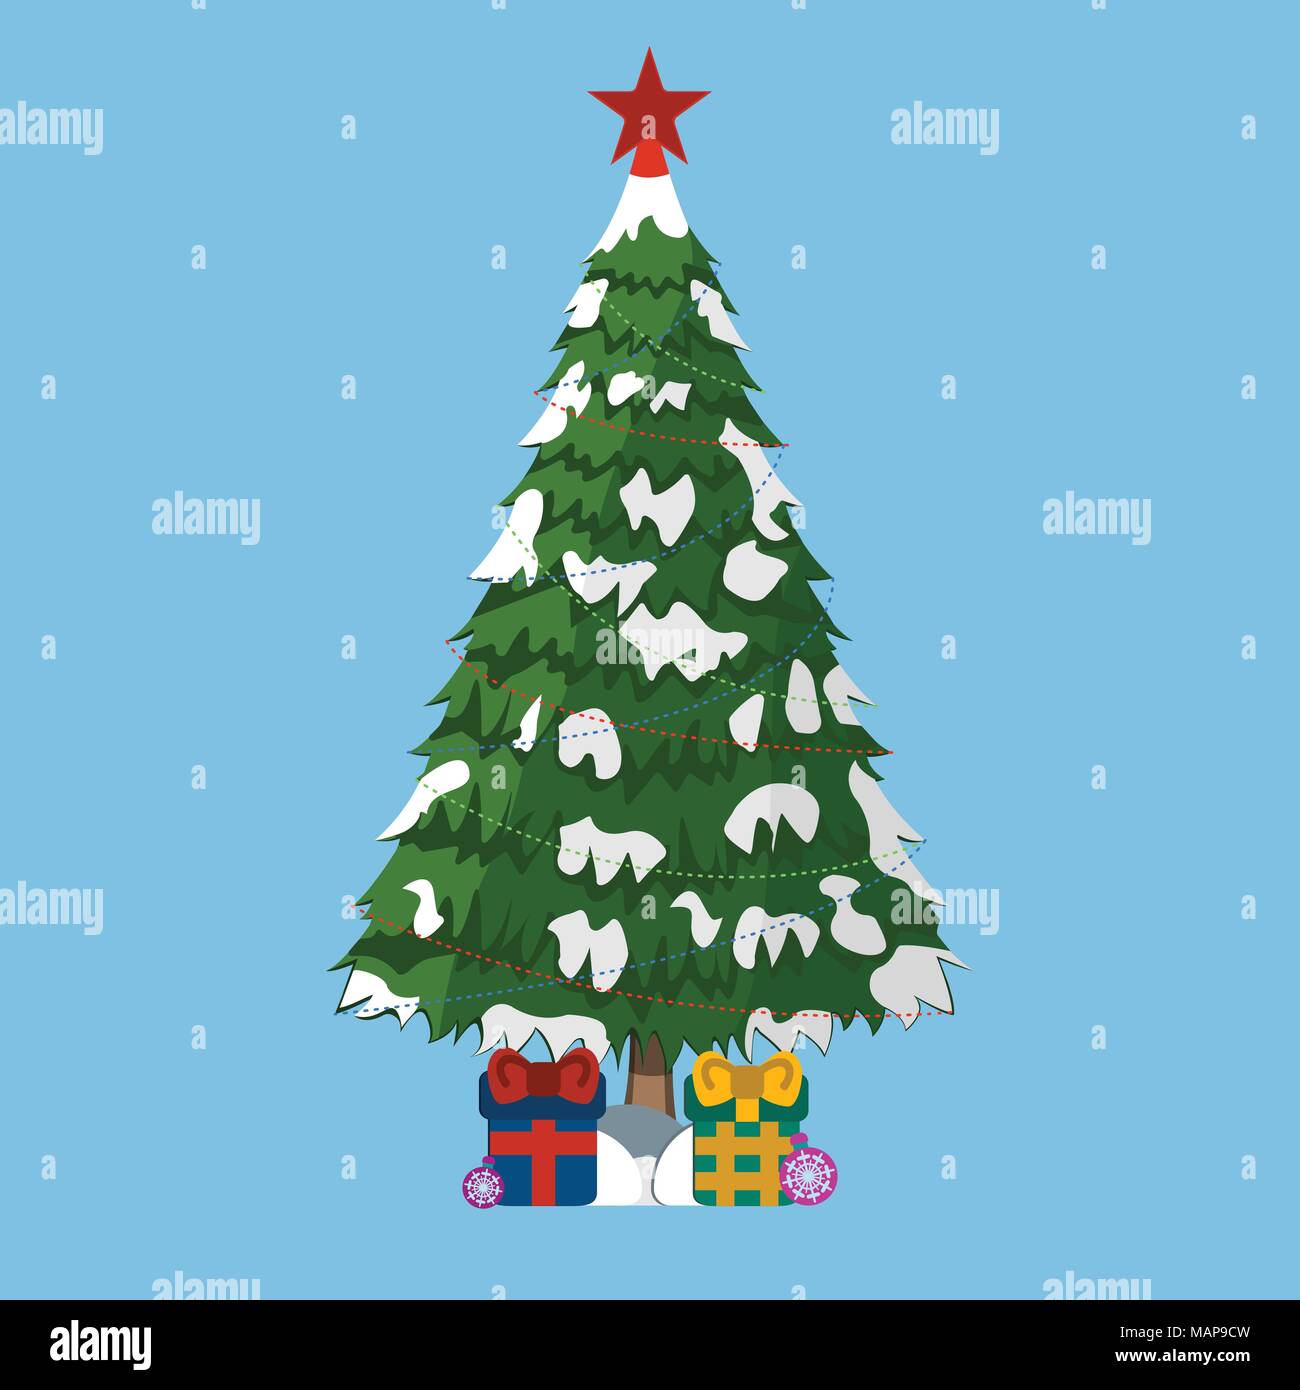 Weihnachtsbaum mit Geschenken und Red Star, XMas-Symbol. Cartoon Stil. Vector Illustration für Weihnachten. Stock Vektor